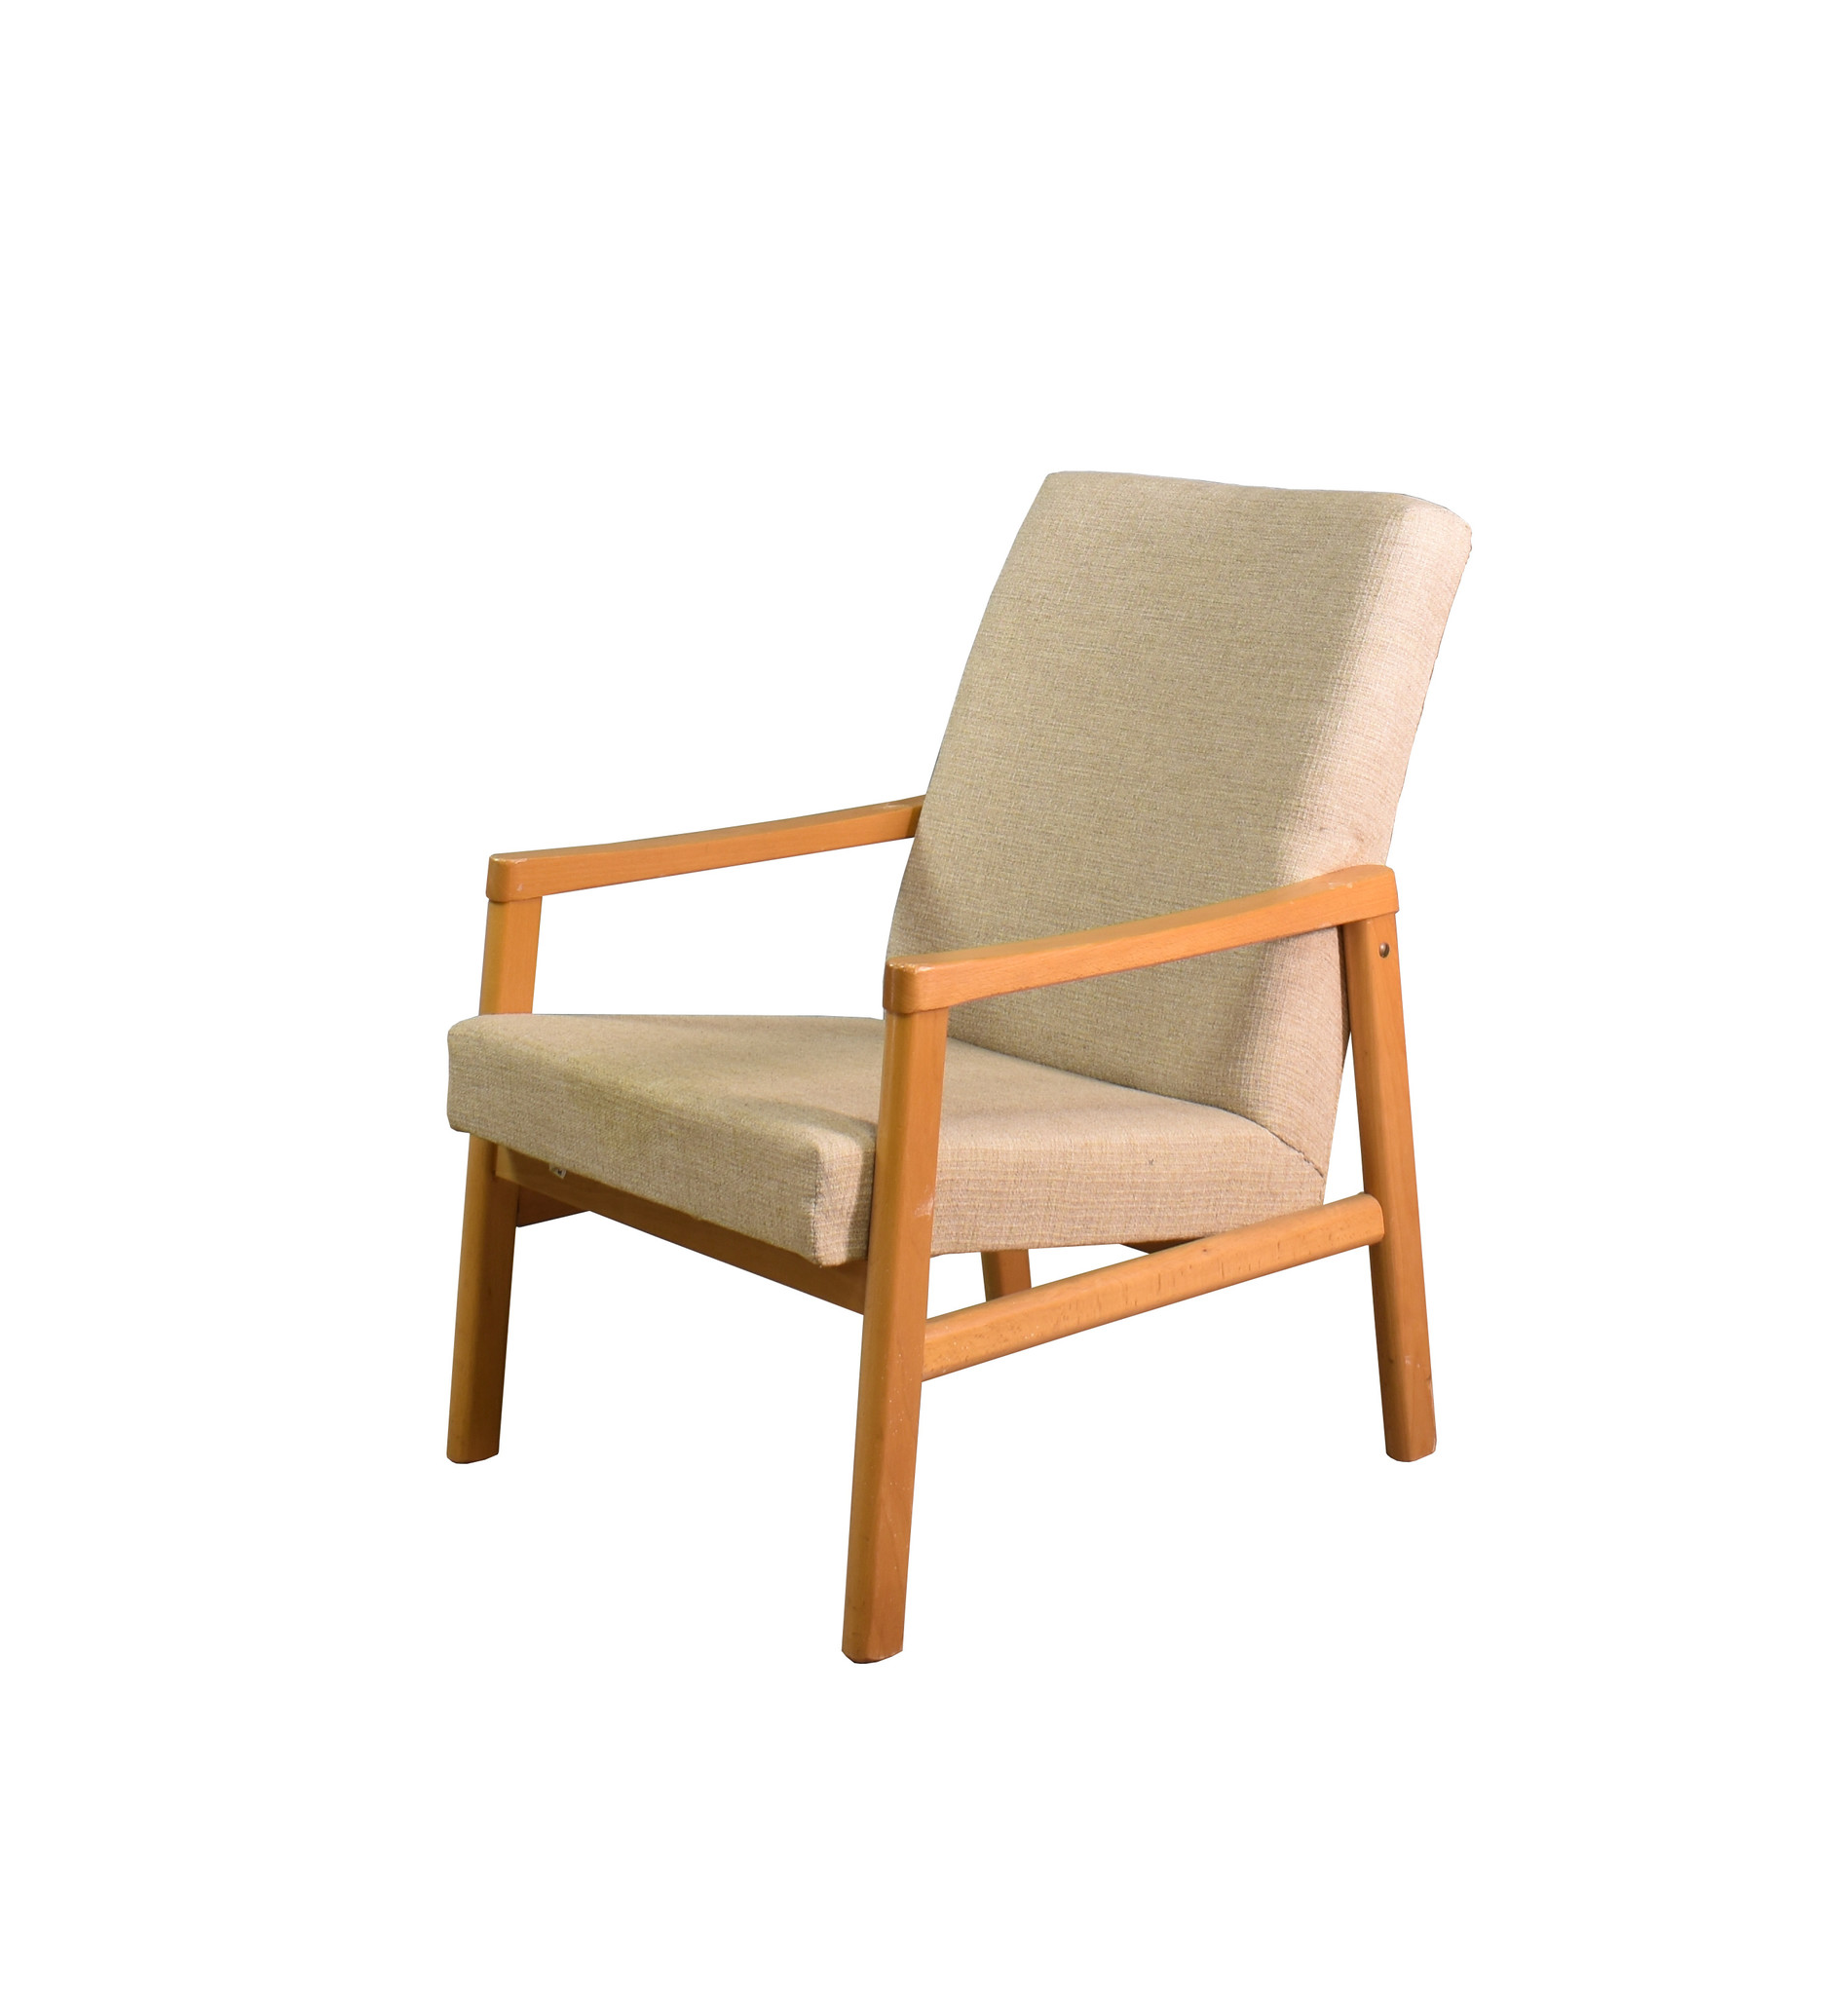 Vintage design stoelen - Oldwood De woonwinkel - Oldwood - De Woonwinkel